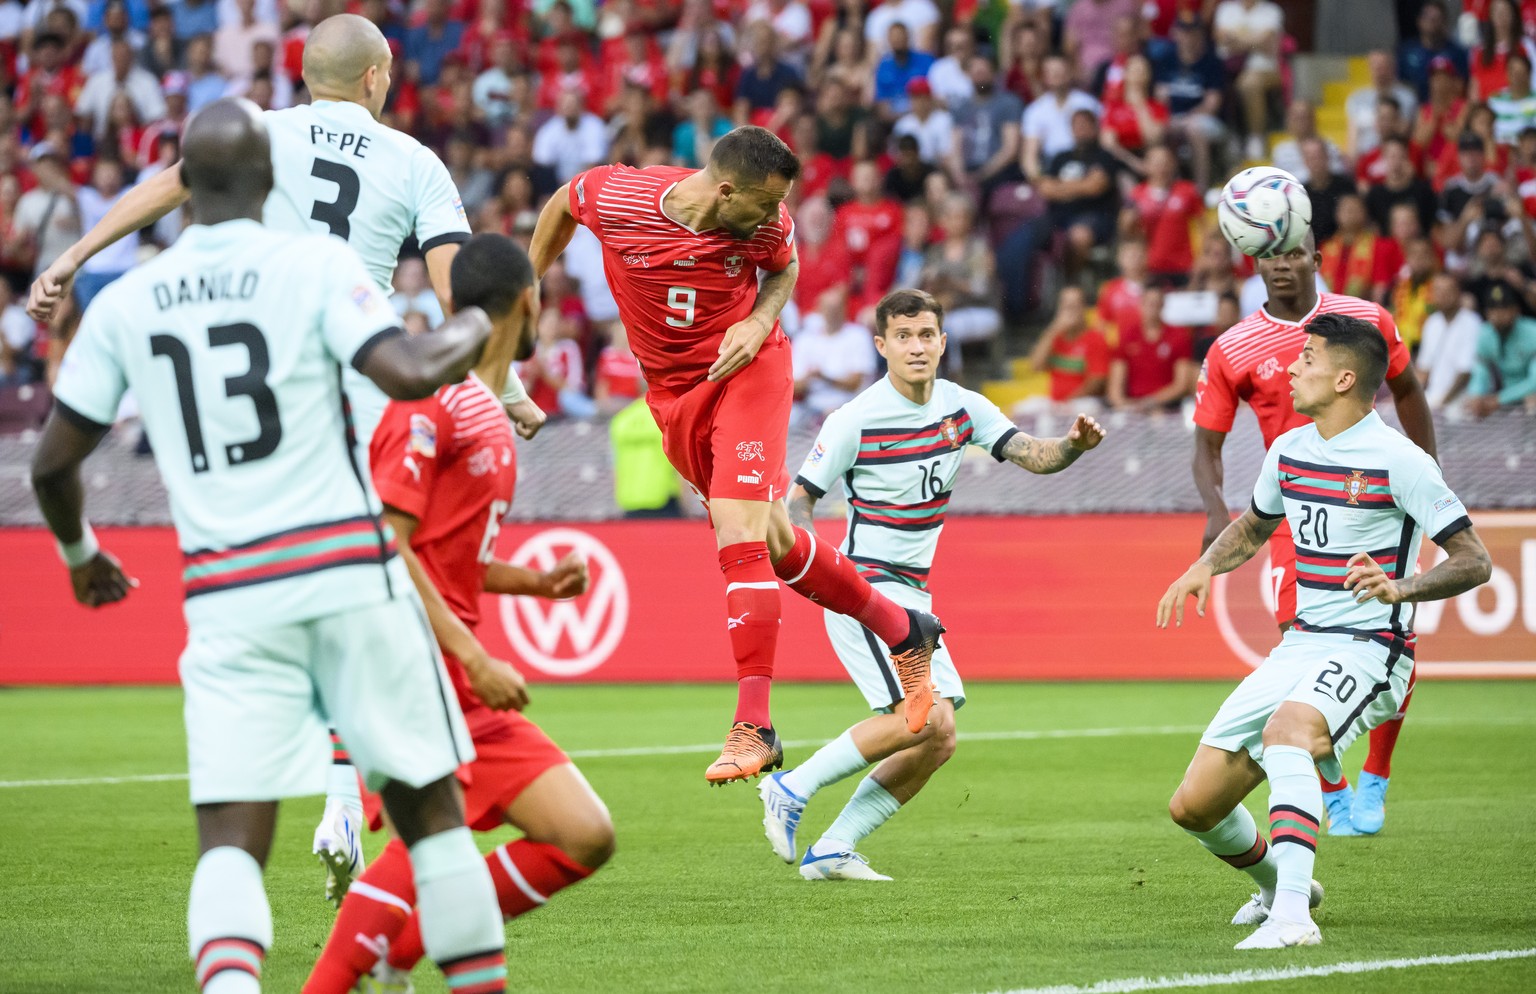 Herrlich herausgespielt und abgeschlossen: Haris Seferovic köpft das 1:0 gegen Portugal.